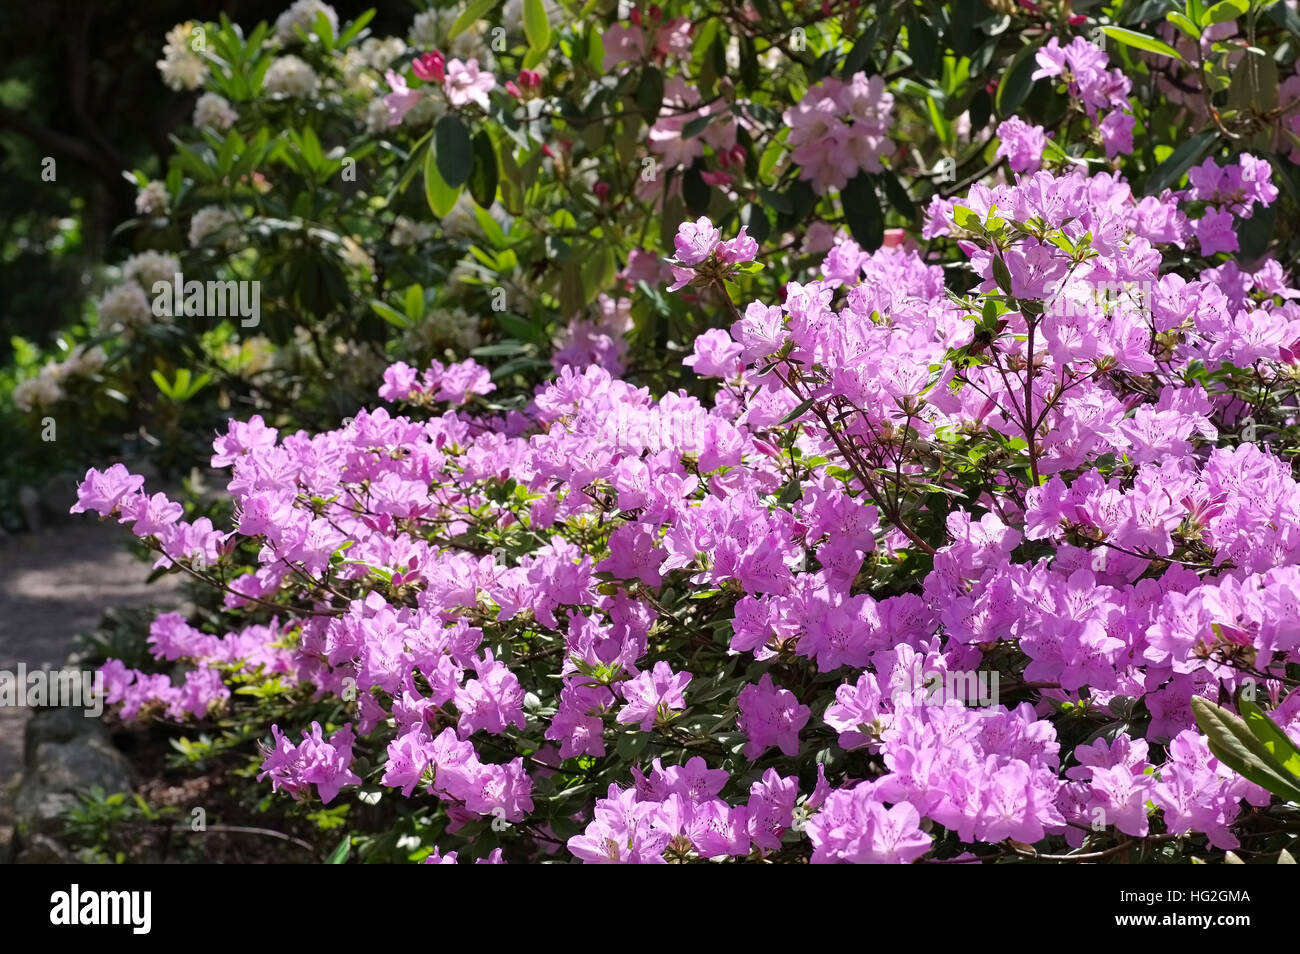 Rhododendron schlippenbachii im Frühling - Rhododendron schlippenbachii plant in spring Stock Photo